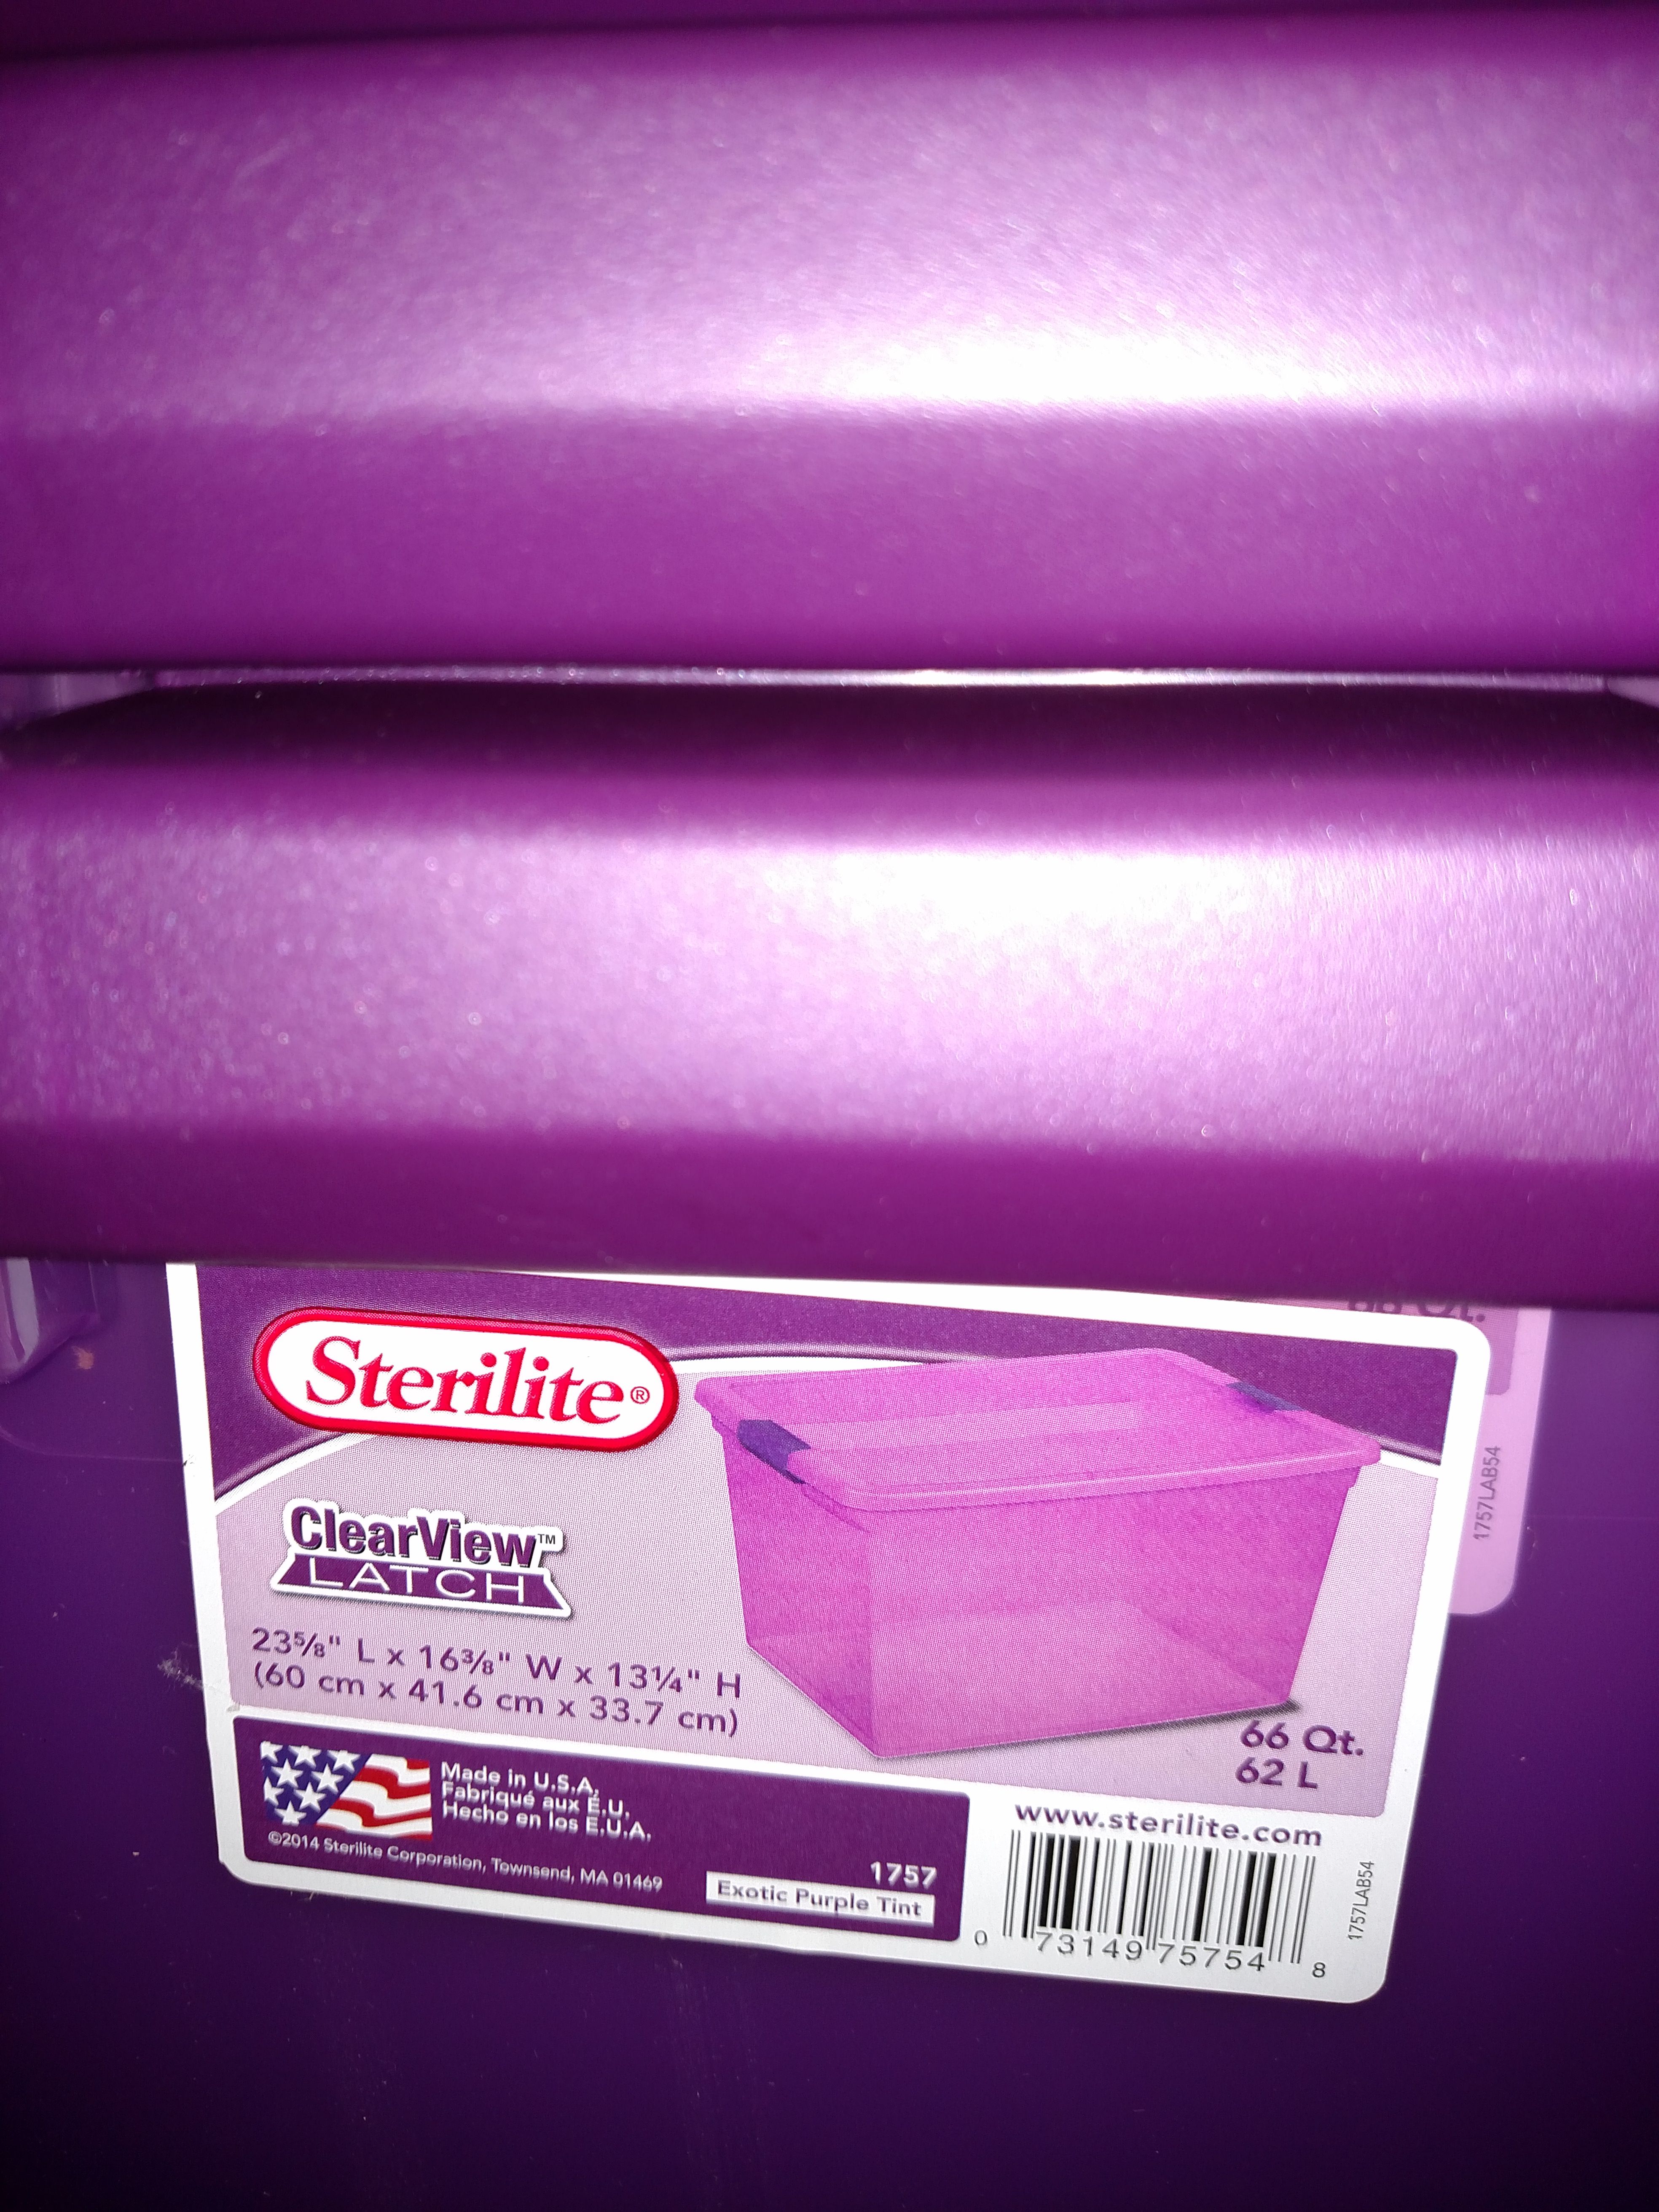 Sterilite 66 Quart Clearview Latch Box 